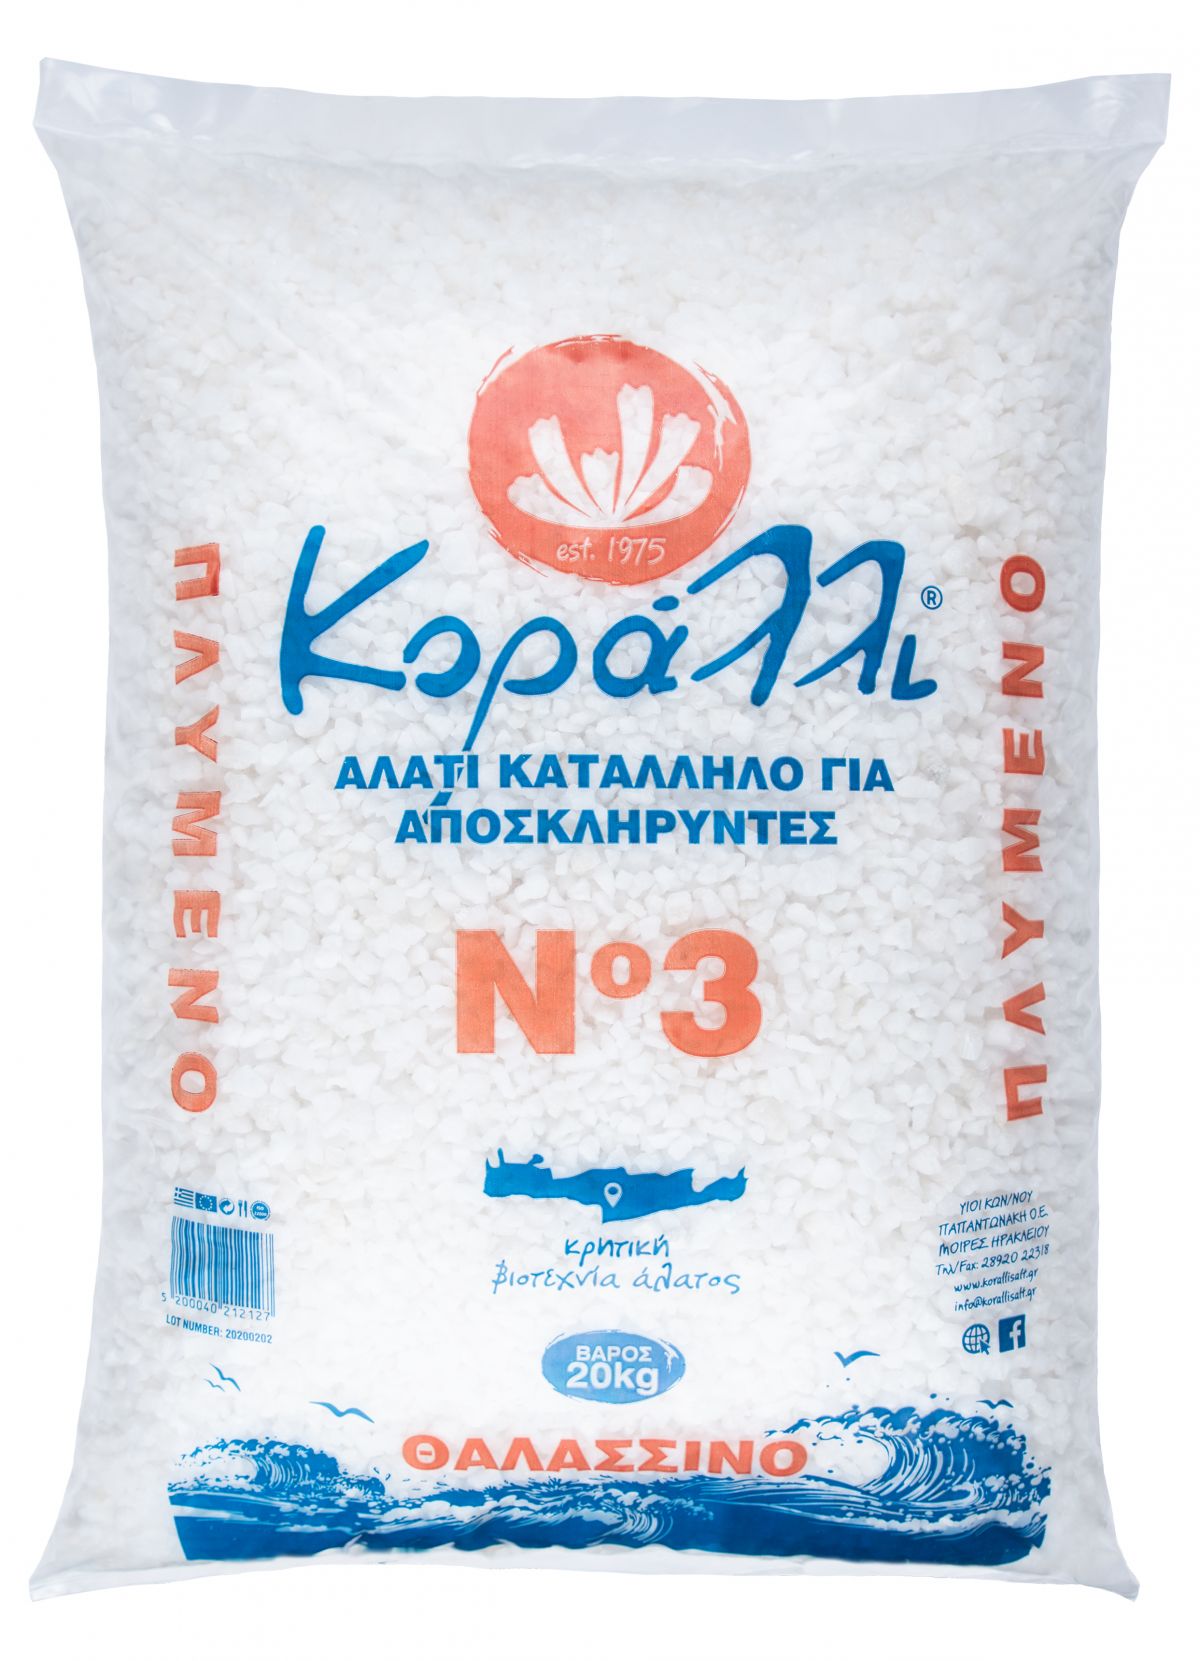 Αλάτι ΚΟΡΑΛΛΙ κατάλληλο για αποσκληρυντές Νο3 20kg